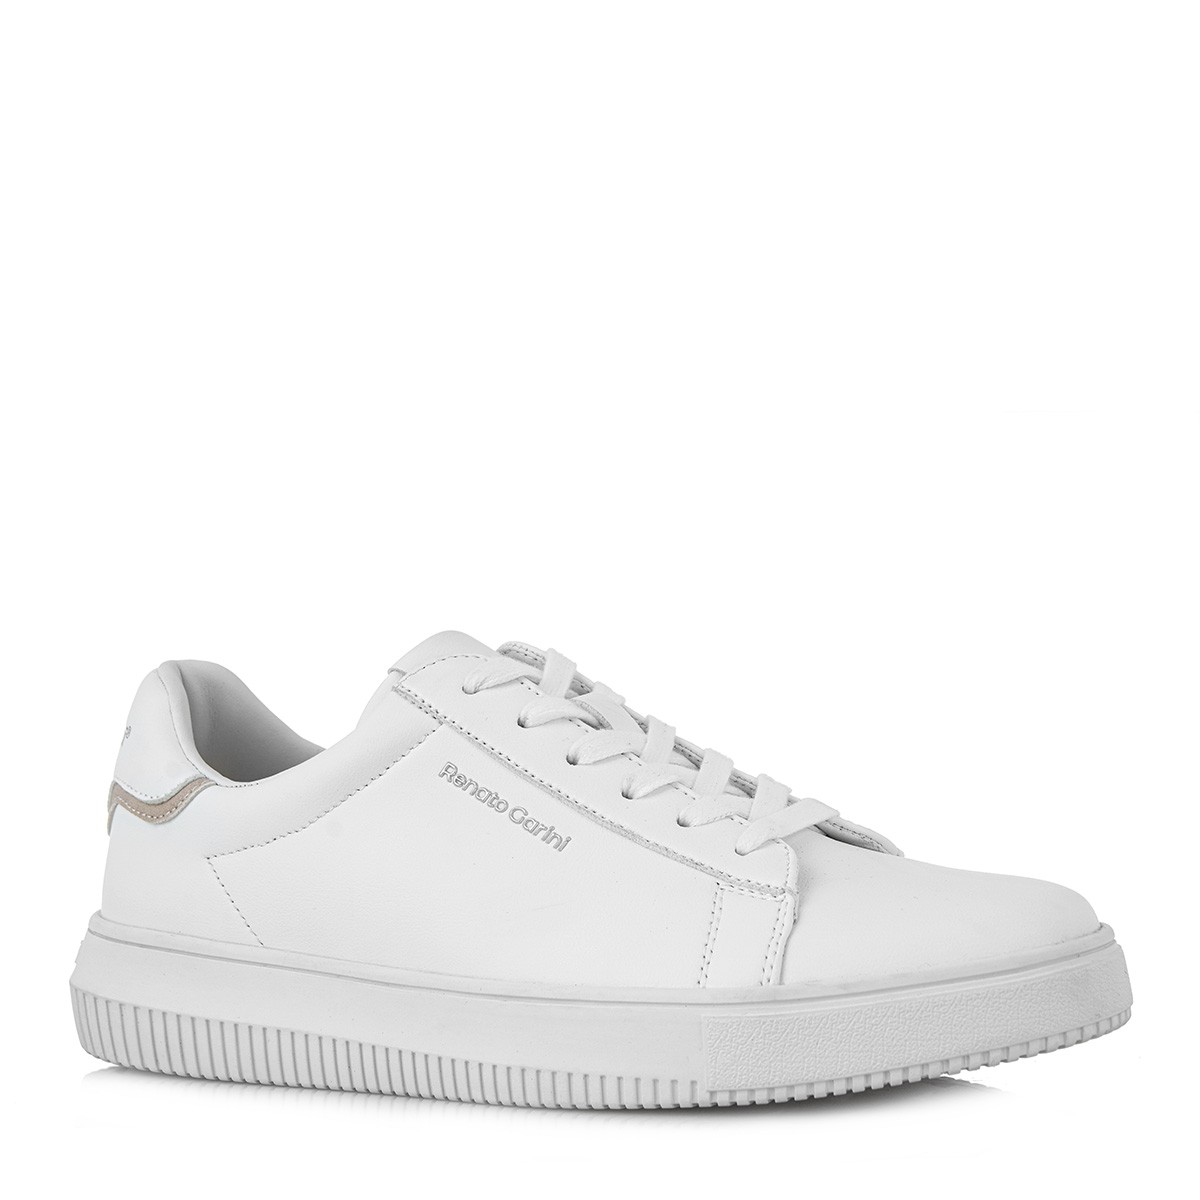 Renato Garini Ανδρικά παπούτσια Sneakers 700-015 Λευκό Πάγου Nubuck S570001529A1 Λευκό